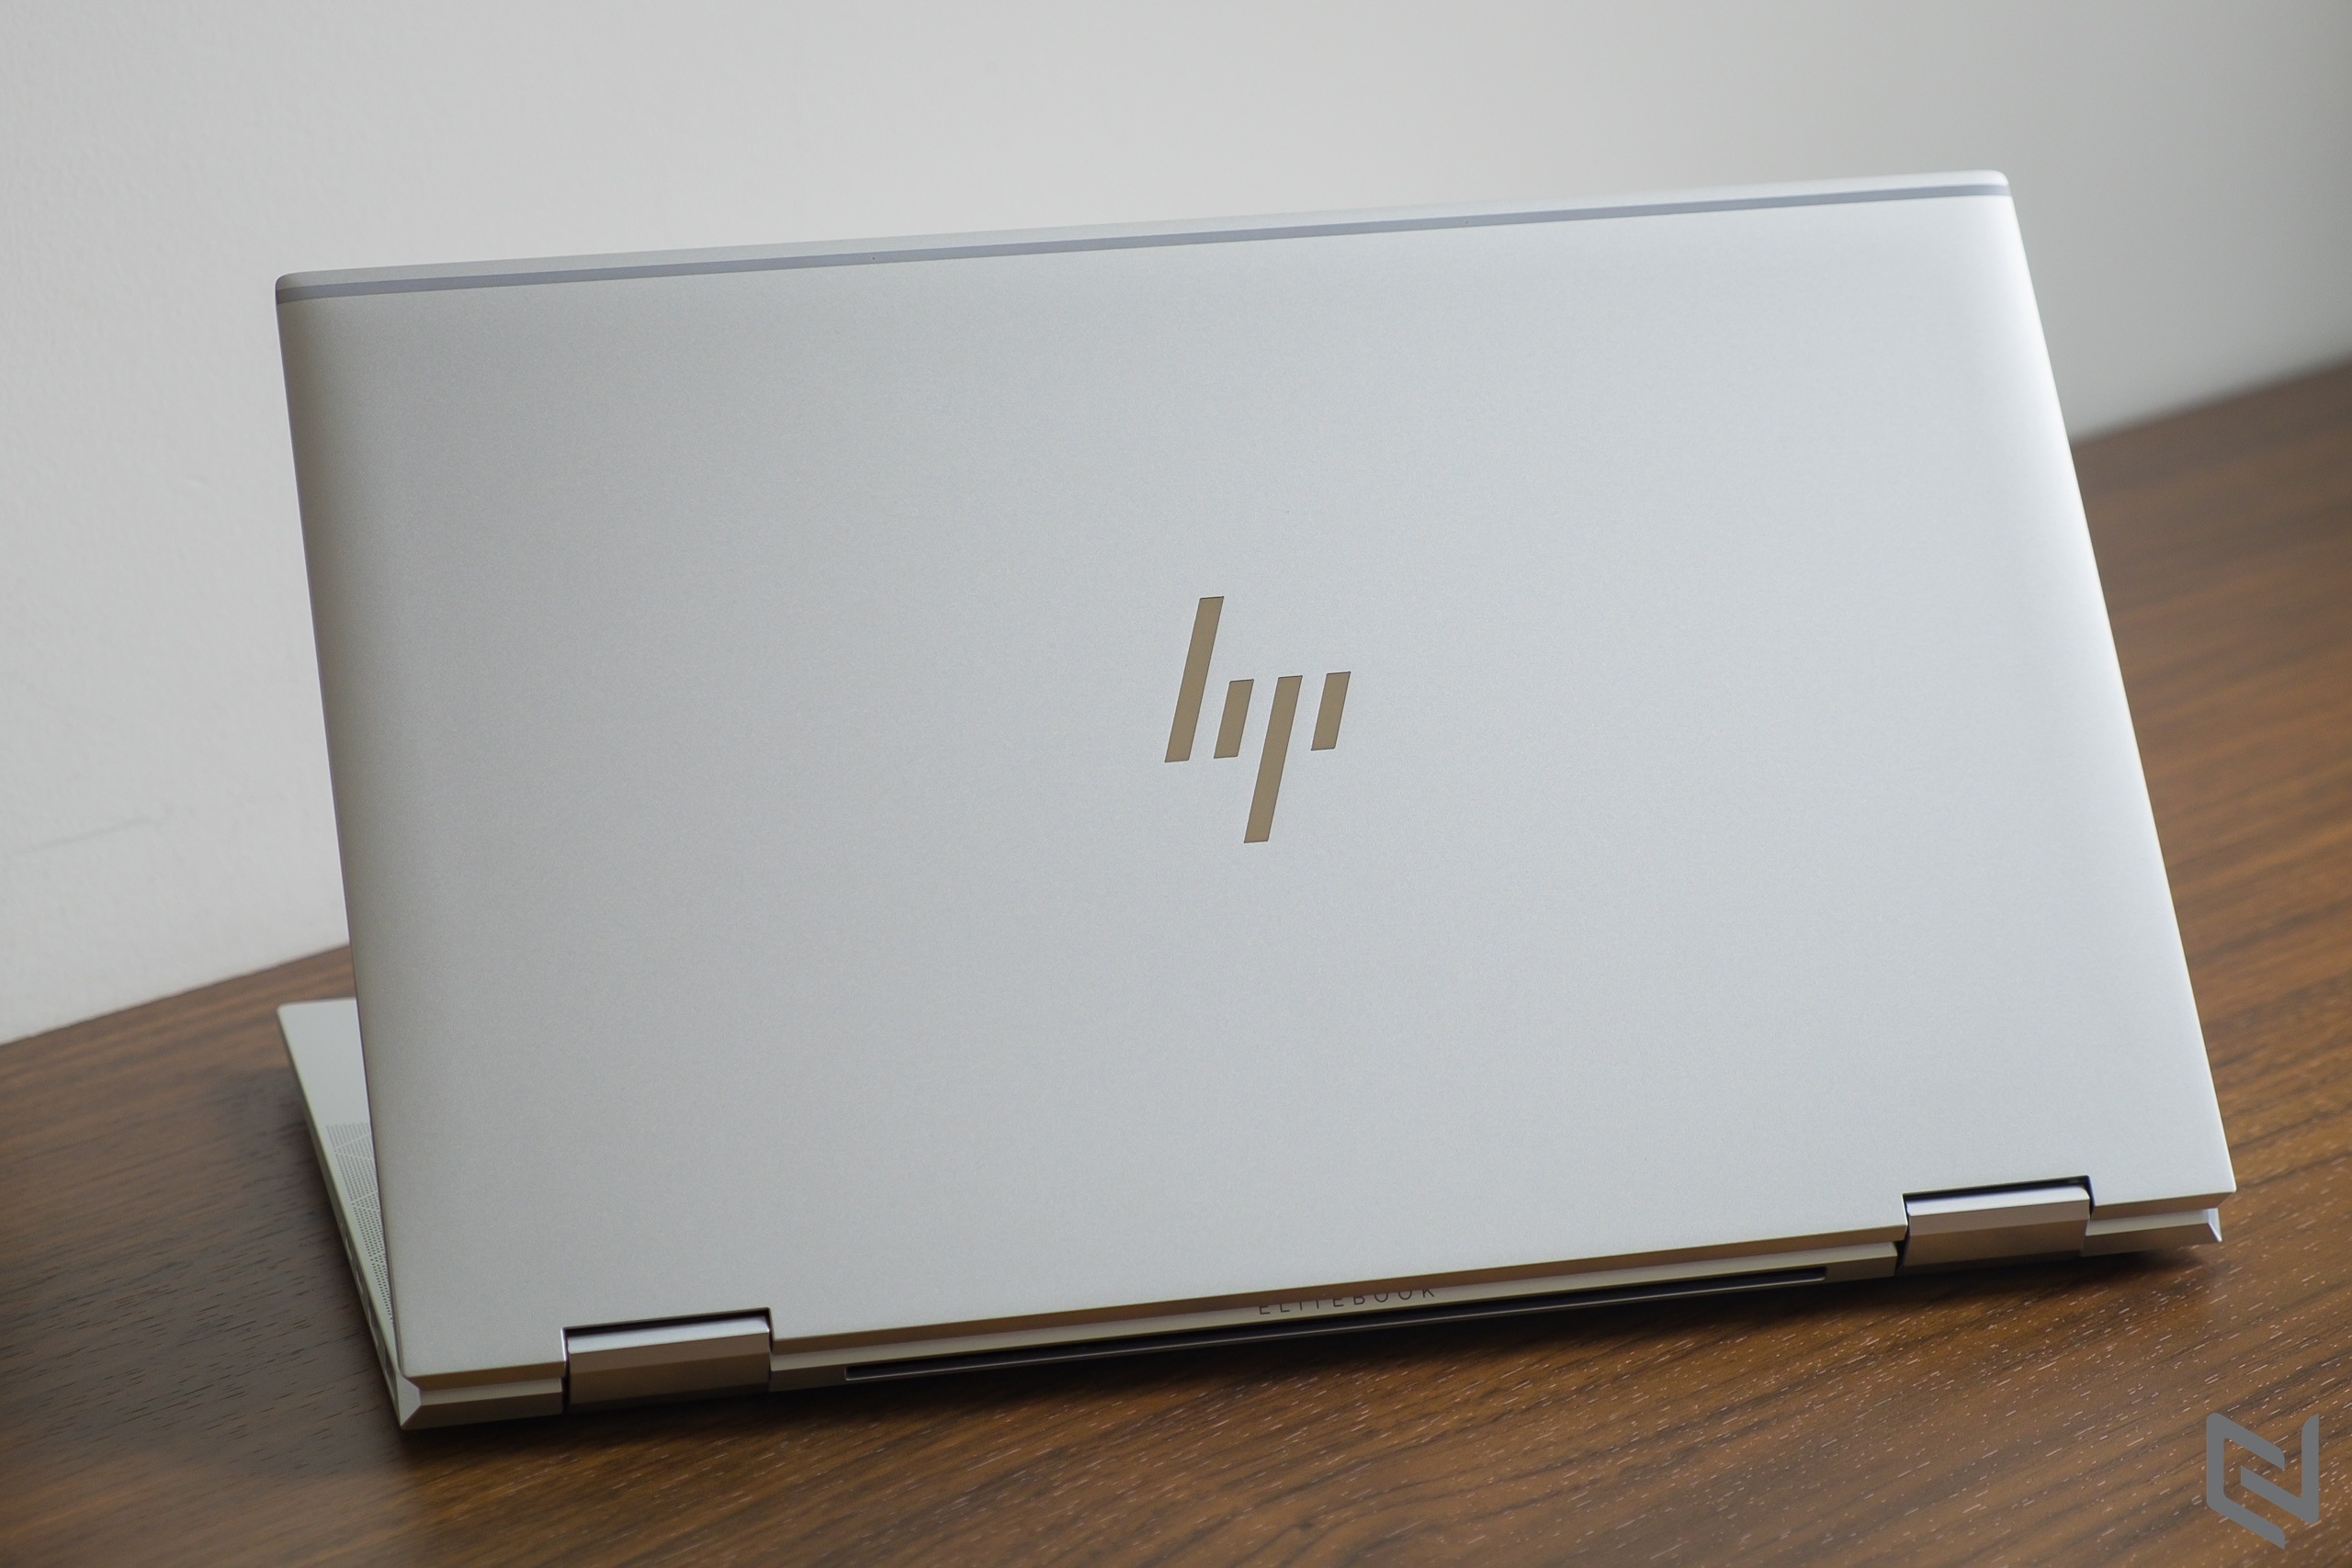 Đánh giá laptop HP EliteBook x360 1030 G8: Thiết kế cao cấp, siêu gọn nhẹ và bảo mật cùng hiệu năng mạnh mẽ